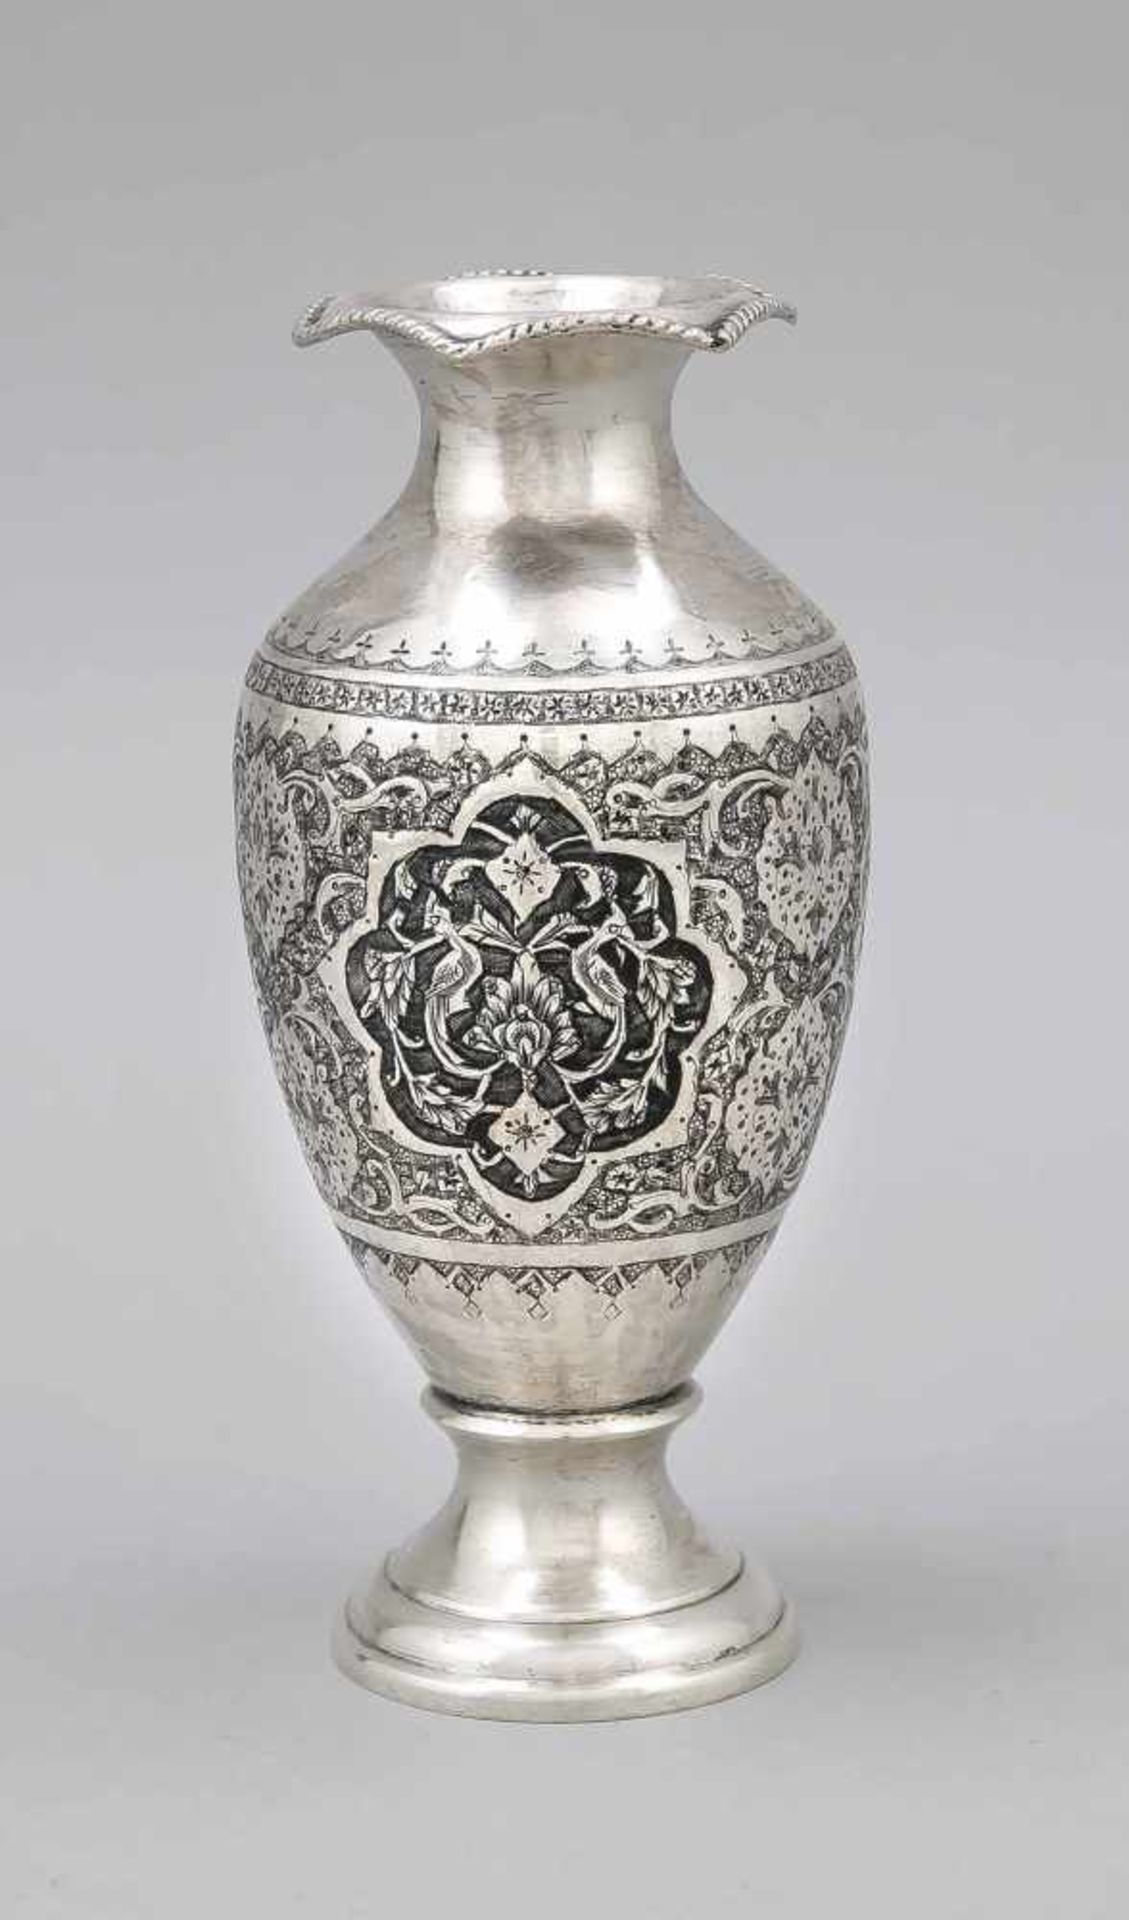 Vase, wohl Persien, 20. Jh., Silber punziert, runder gewölbter Stand, ovoider Korpus,6-seitiger